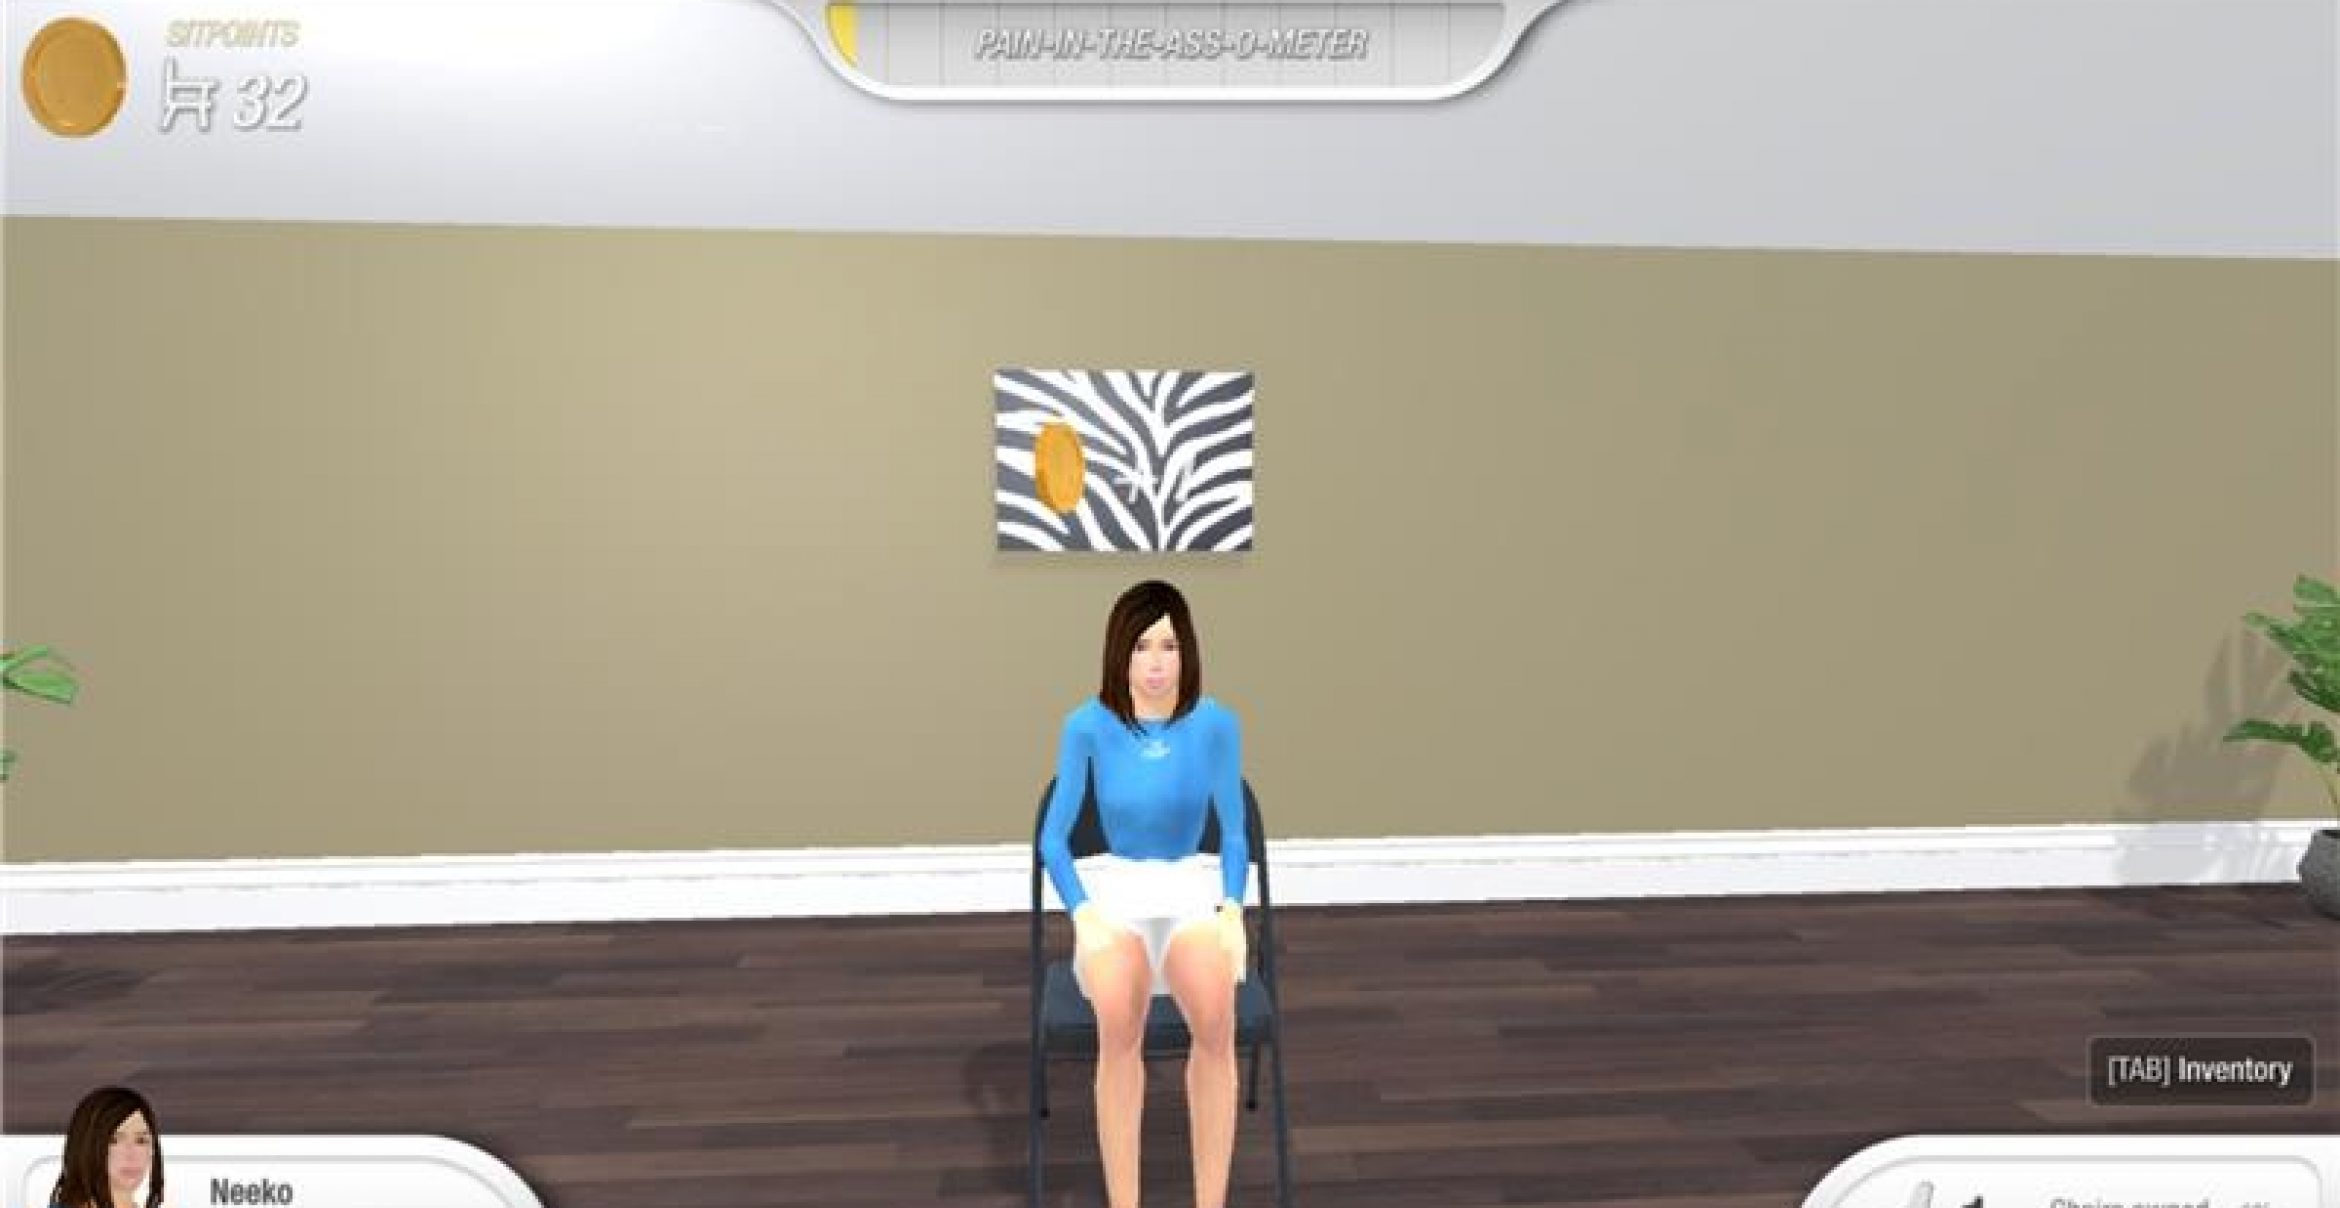 „Chair Simulator“: Ein Game, das simuliert, was wir den ganzen Tag machen: sitzen